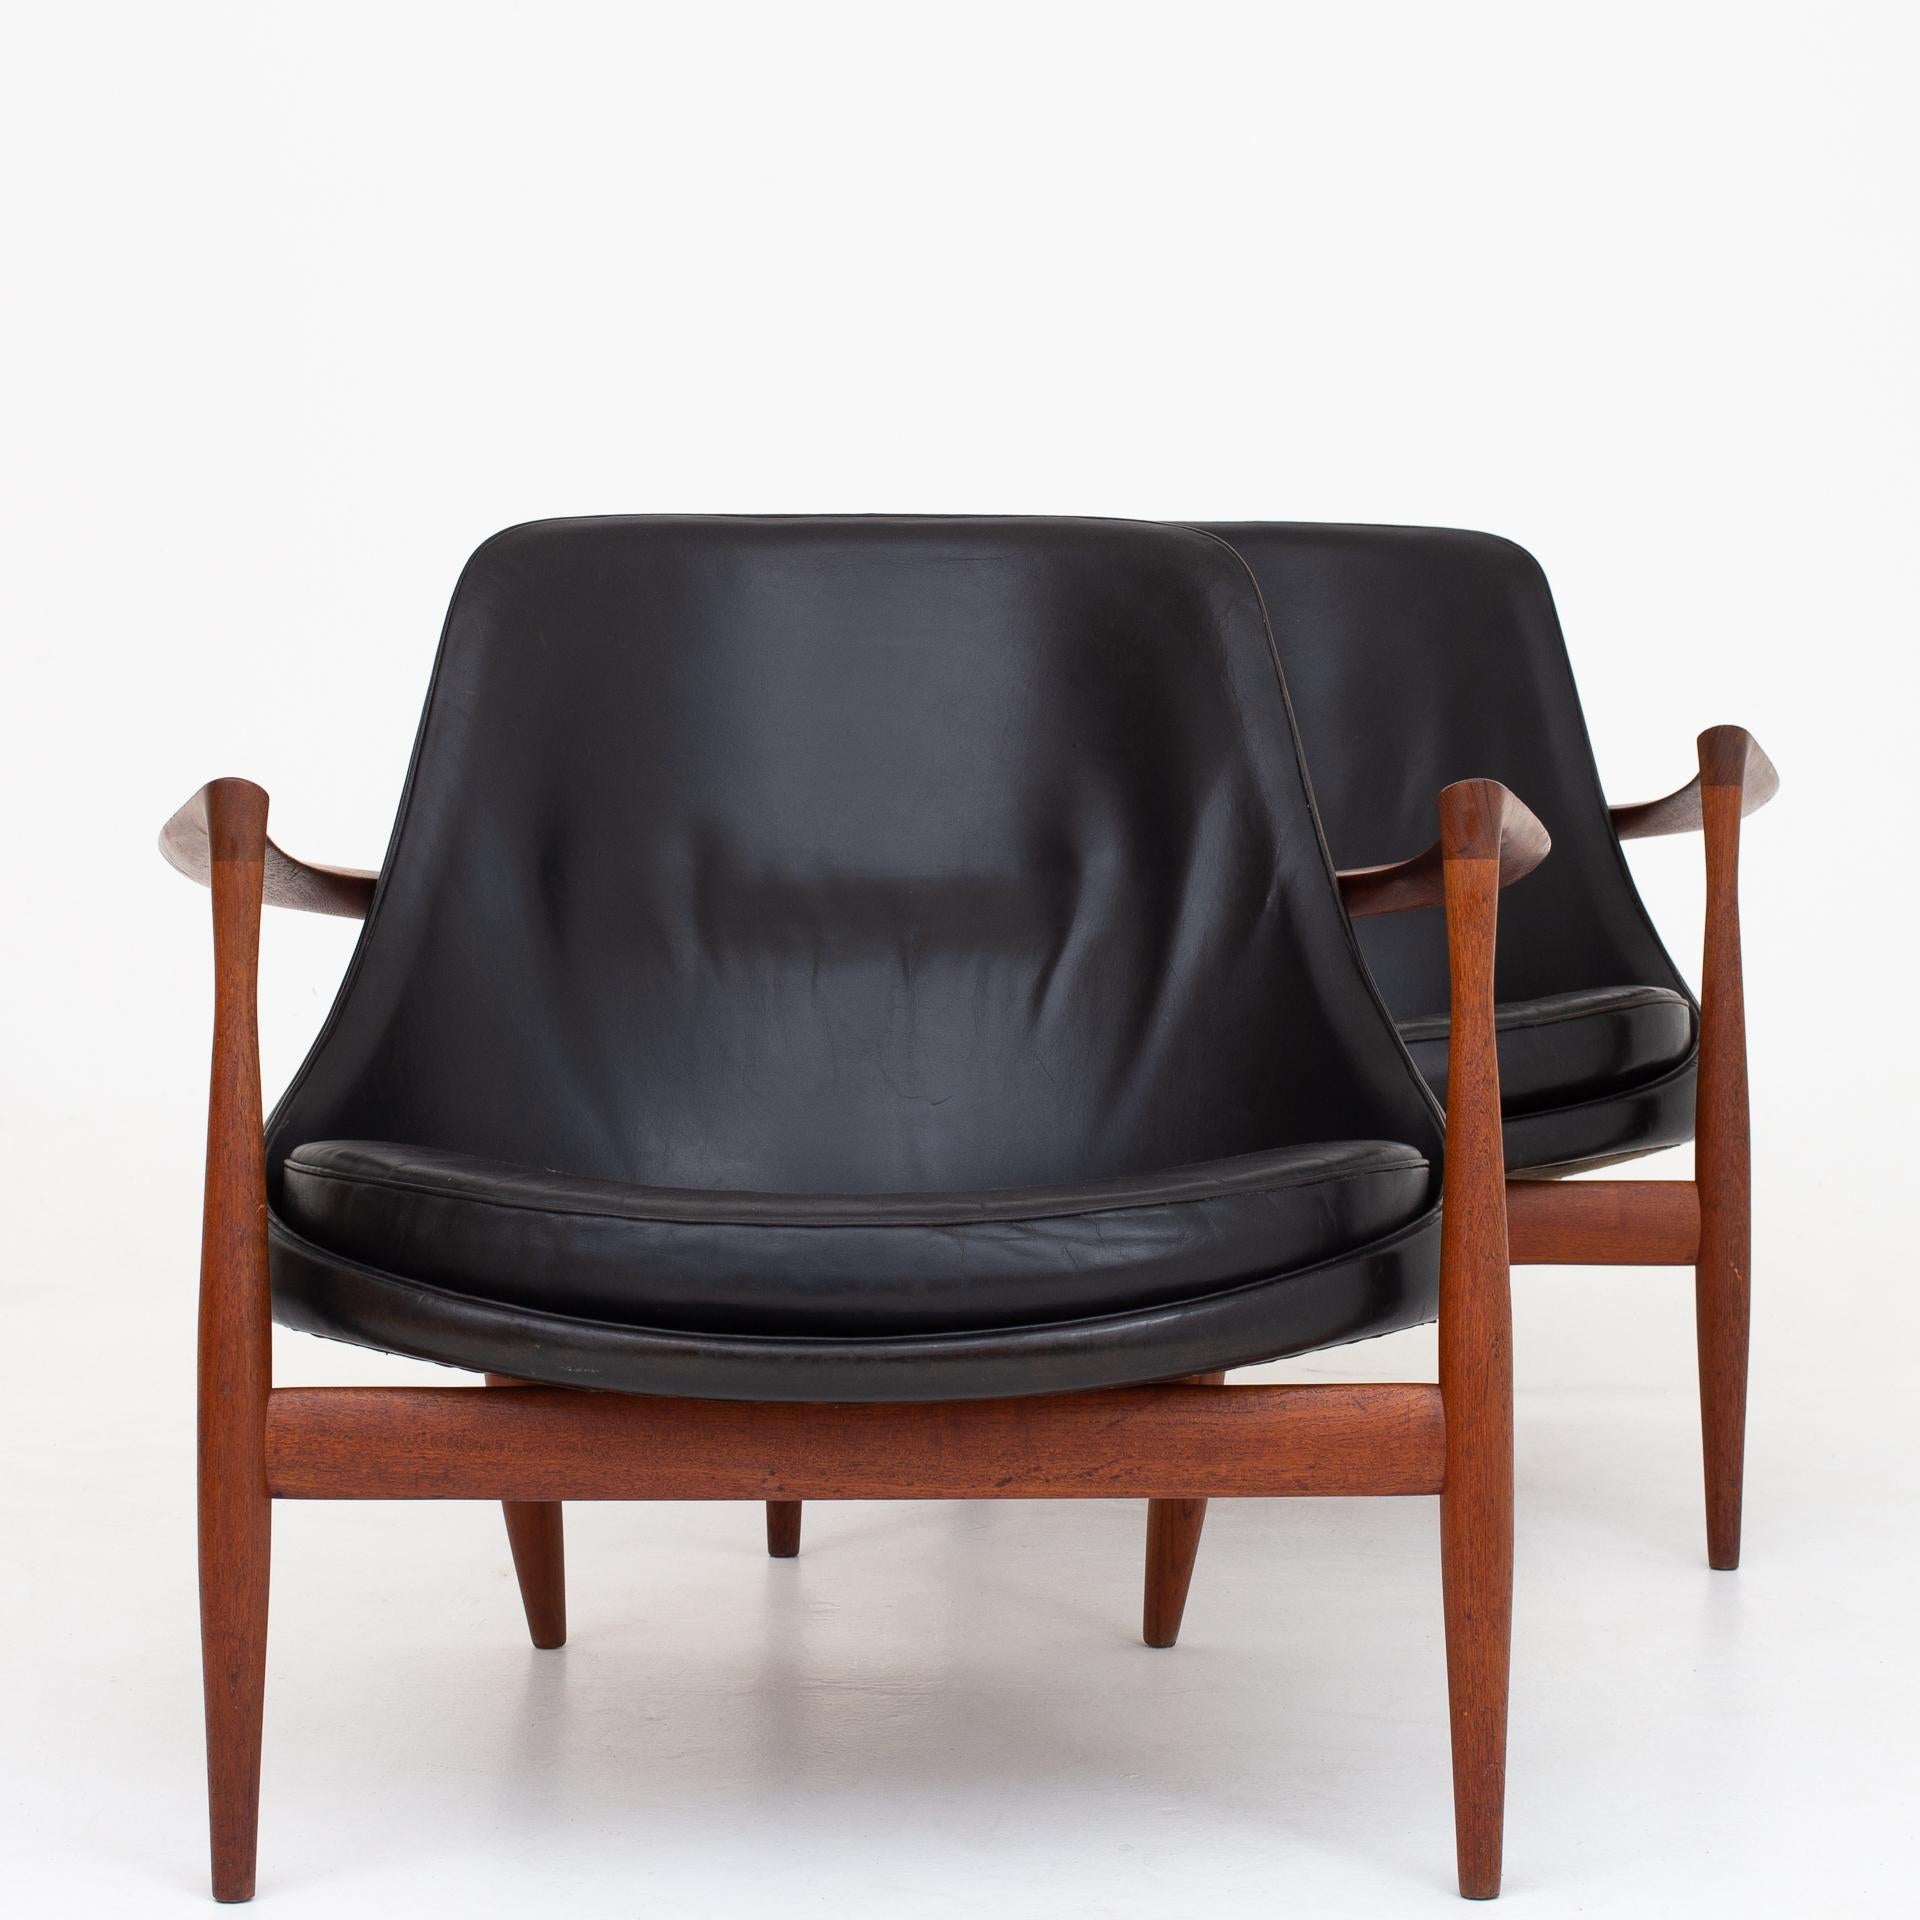 Teak Pair of Elizabeth Chairs by Ib Kofod Larsen